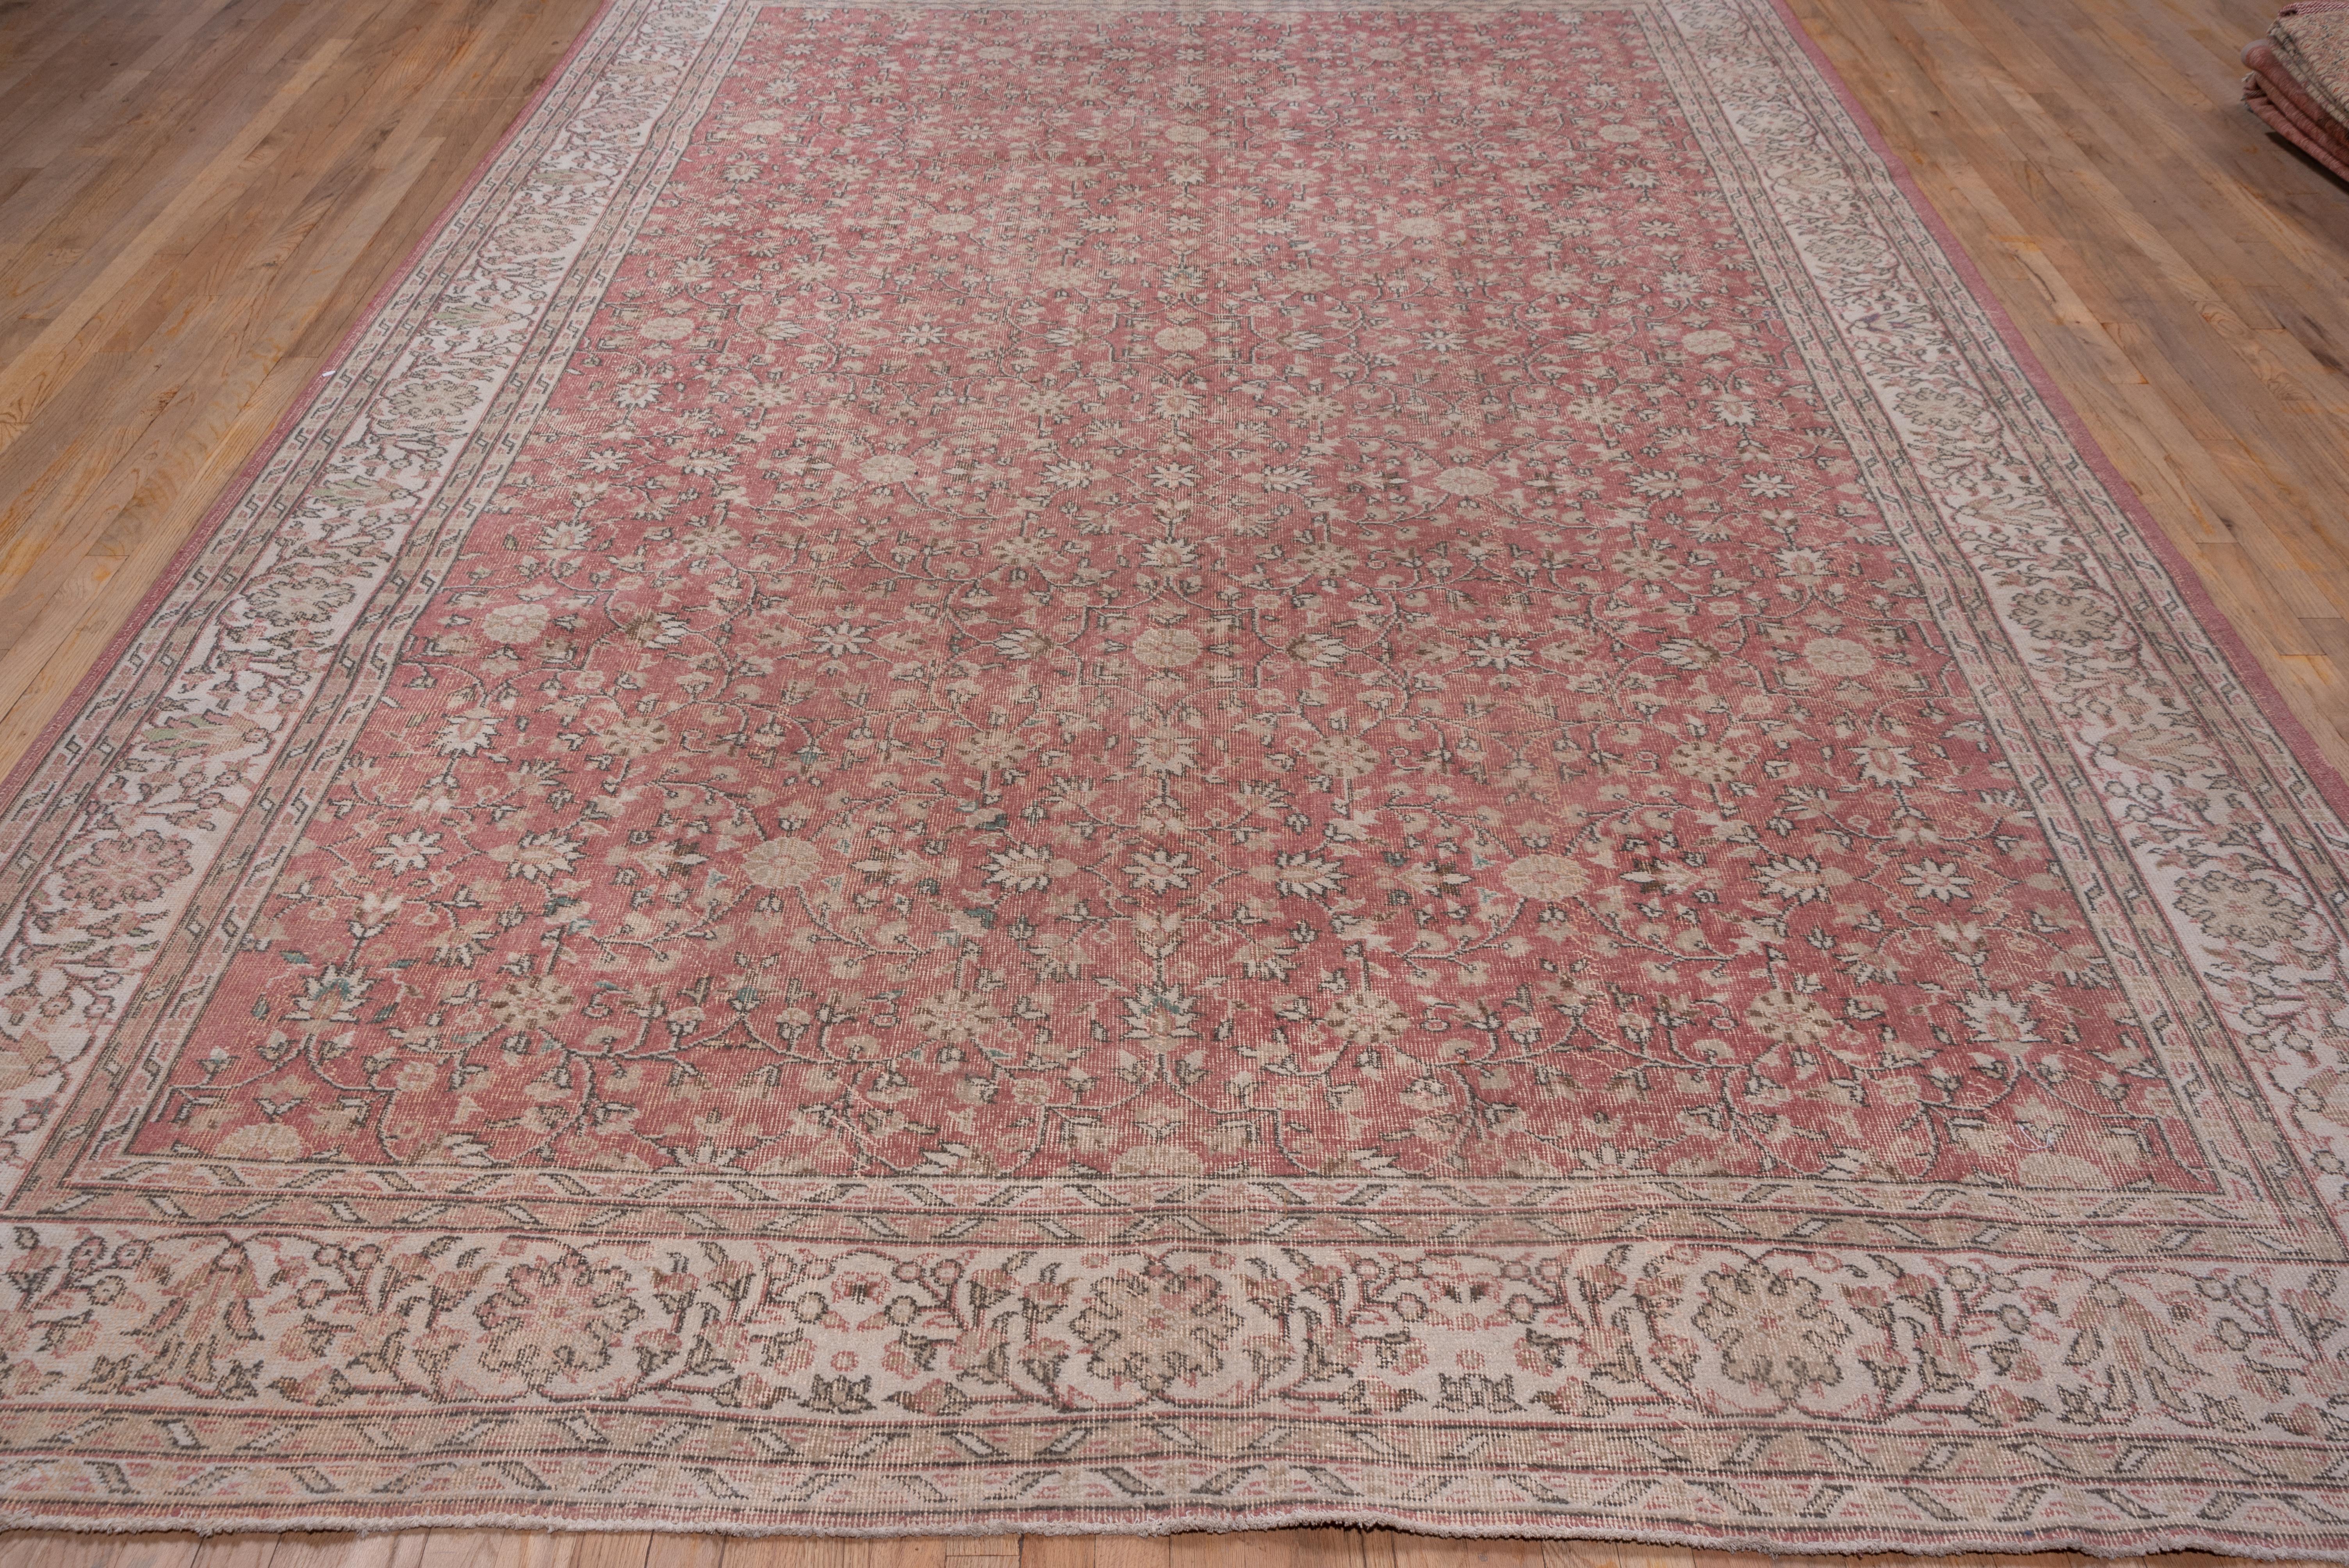 Dieser türkische Teppich in Zimmergröße hat eine selektive Farbkorrosion. Das taupefarbene Feld zeigt rosettenzentrierte Oktogramme inmitten von geschwungenen, blühenden Stängeln, Blütenpalmetten und Blütenrosetten, die in Creme, Khaki und